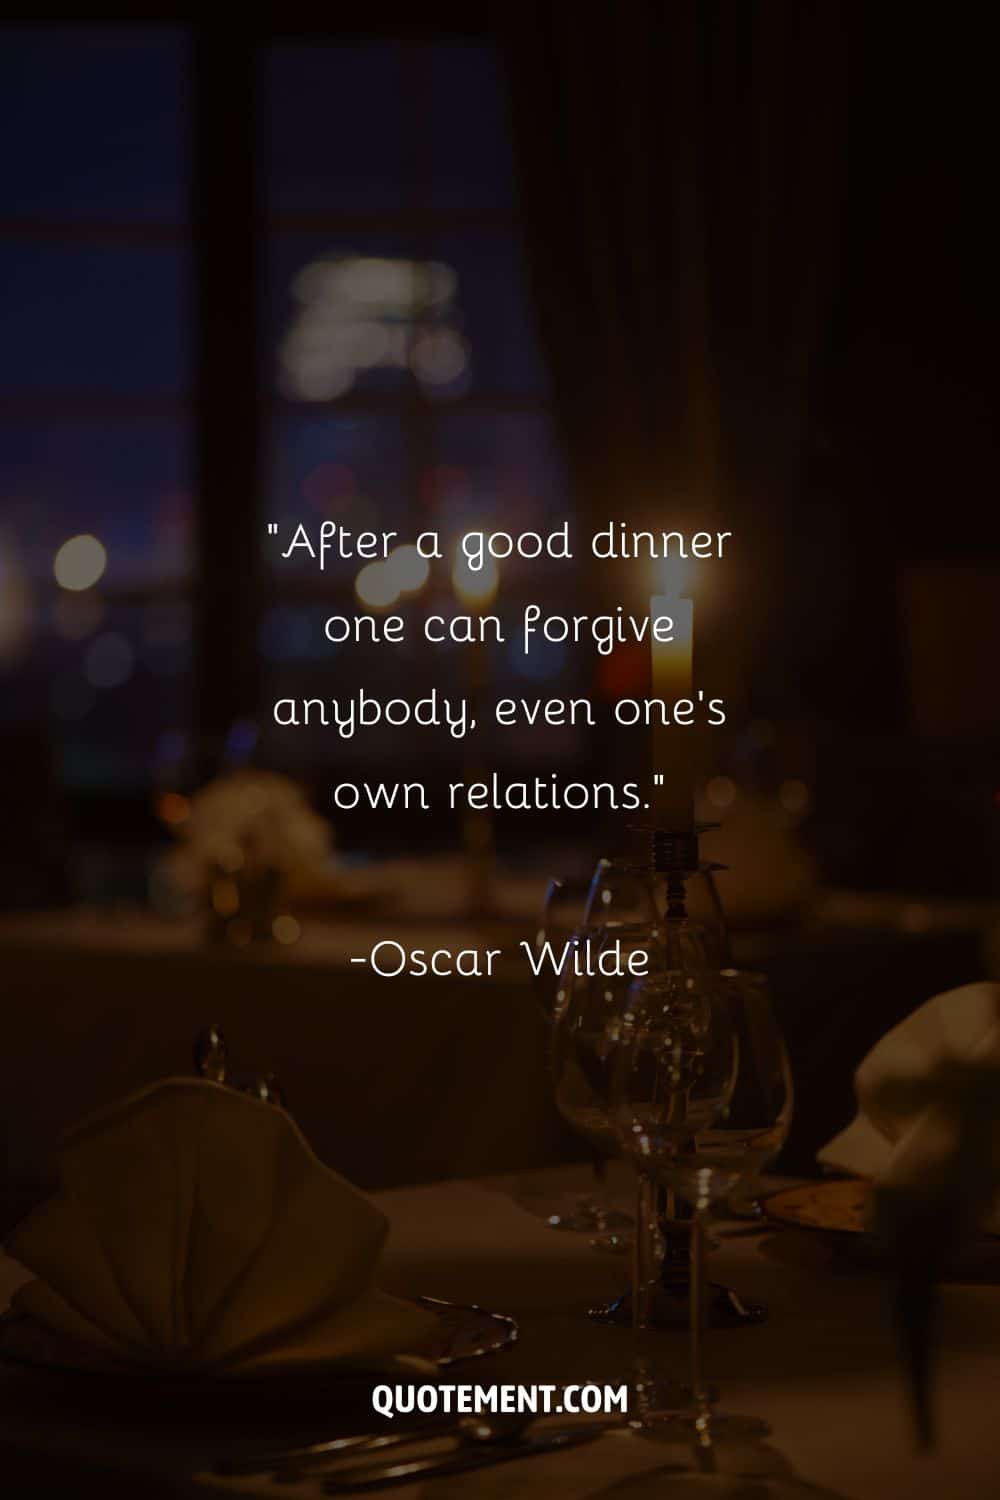 Fotografía de una mesa que representa una cita para cenar